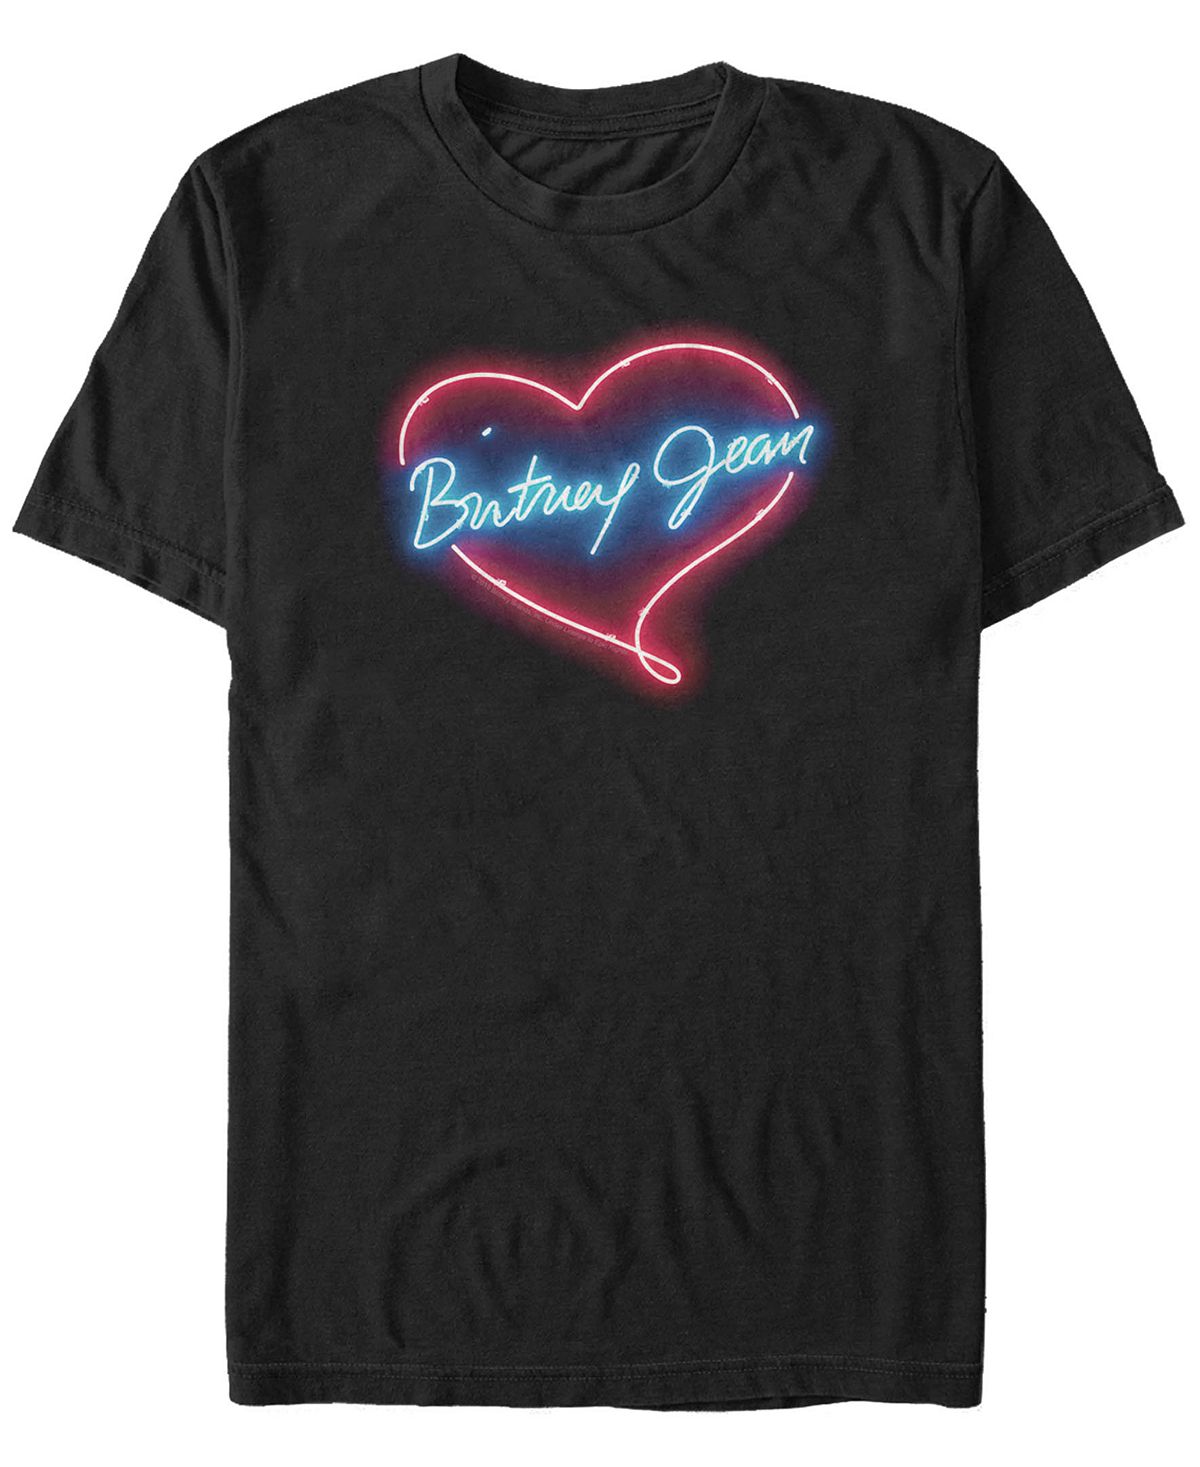 Мужская неоновая футболка с логотипом britney jean с коротким рукавом Fifth Sun, черный